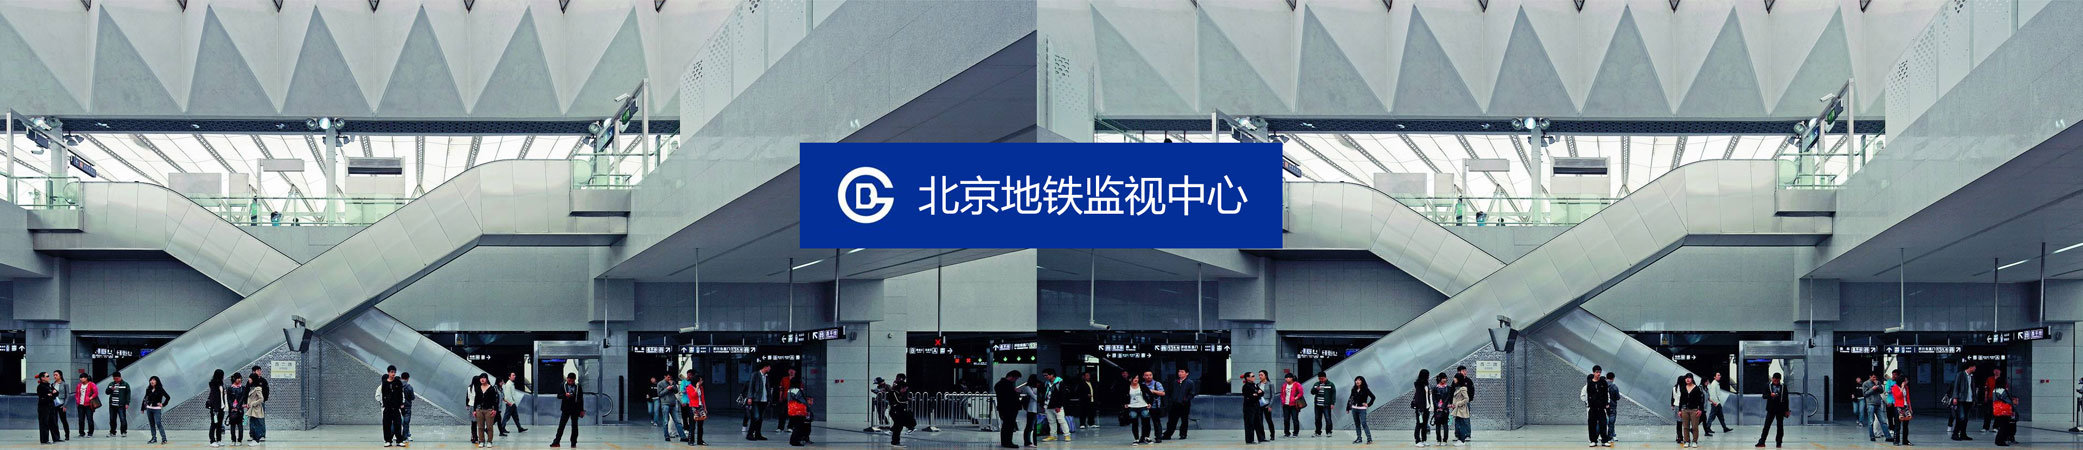 交大思源北京地鐵監視中心大屏和PC端交互優化及界面設計